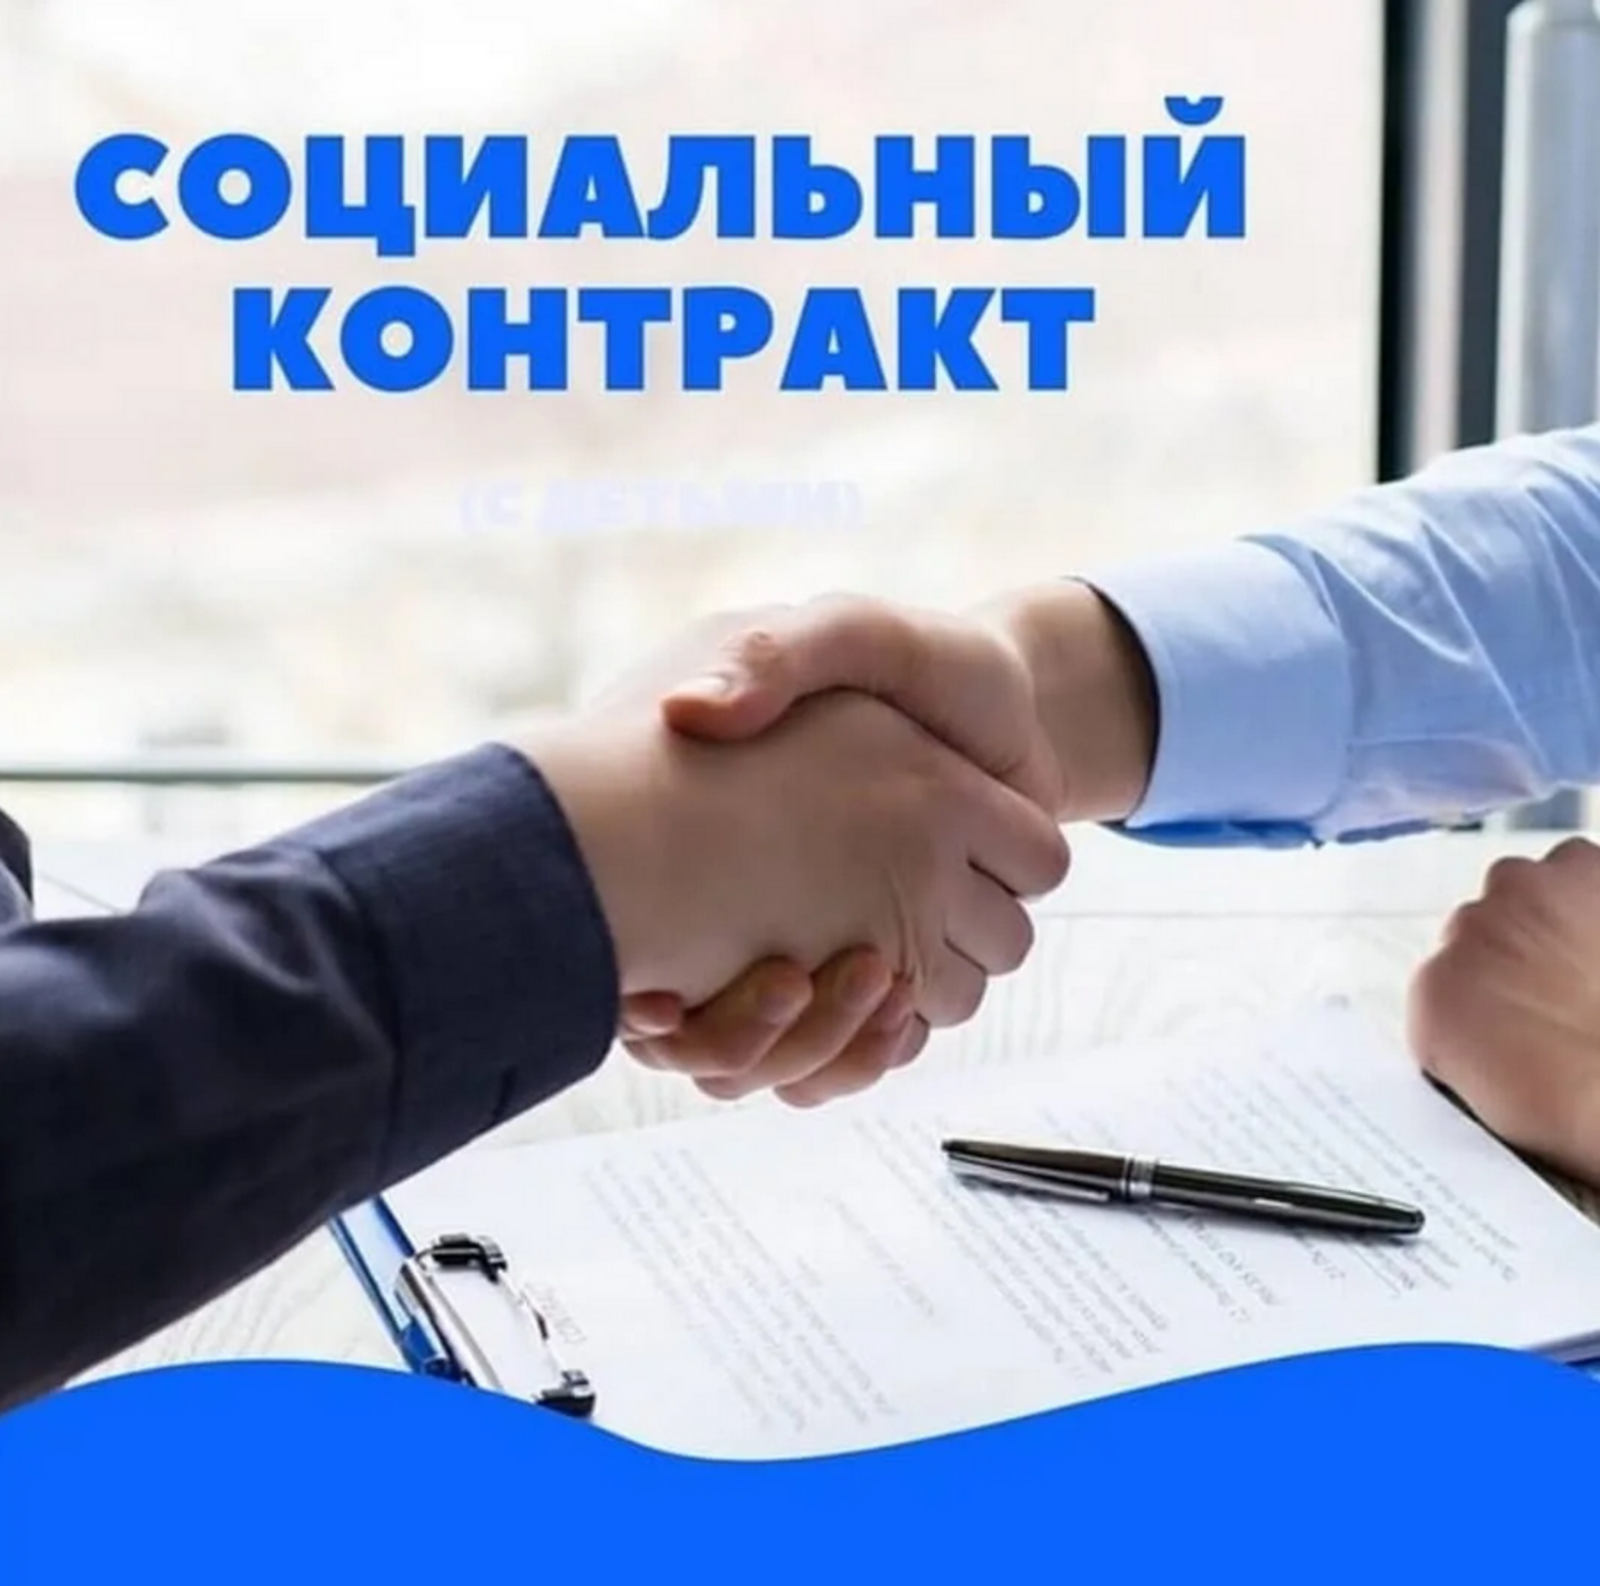 Башкортостан получил дополнительное финансирование на заключение социальных контрактов с малоимущими семьями